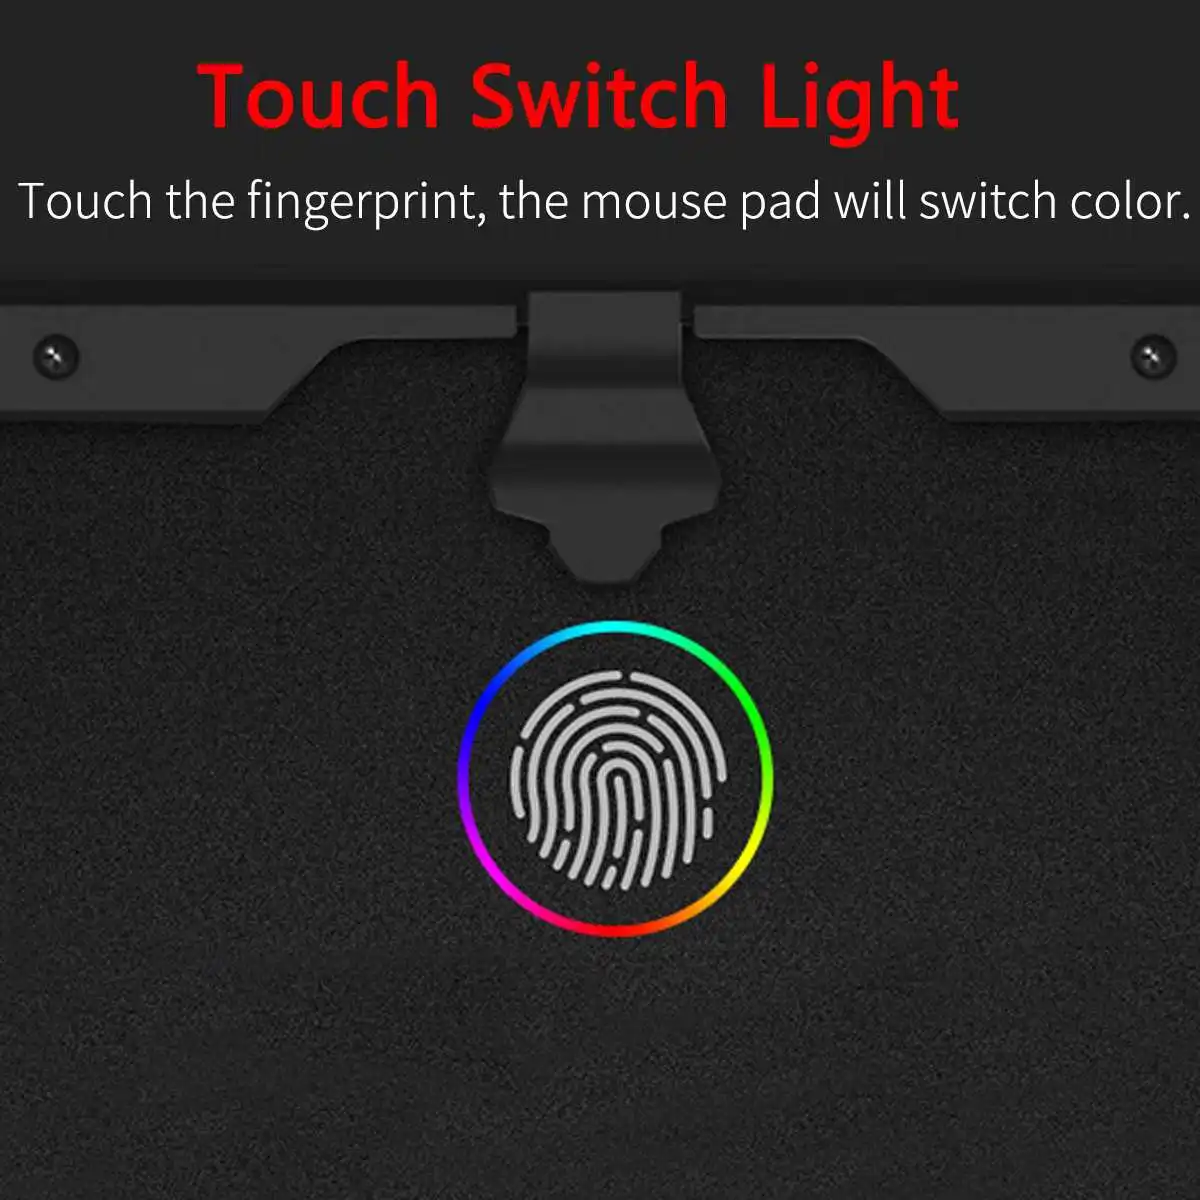 Акриловый цветной светодиодный Жесткий коврик для мыши RGB, игровой коврик для мыши, коврик для мыши Touchs, управление для ноутбука, компьютера+ кронштейн+ кабель USB